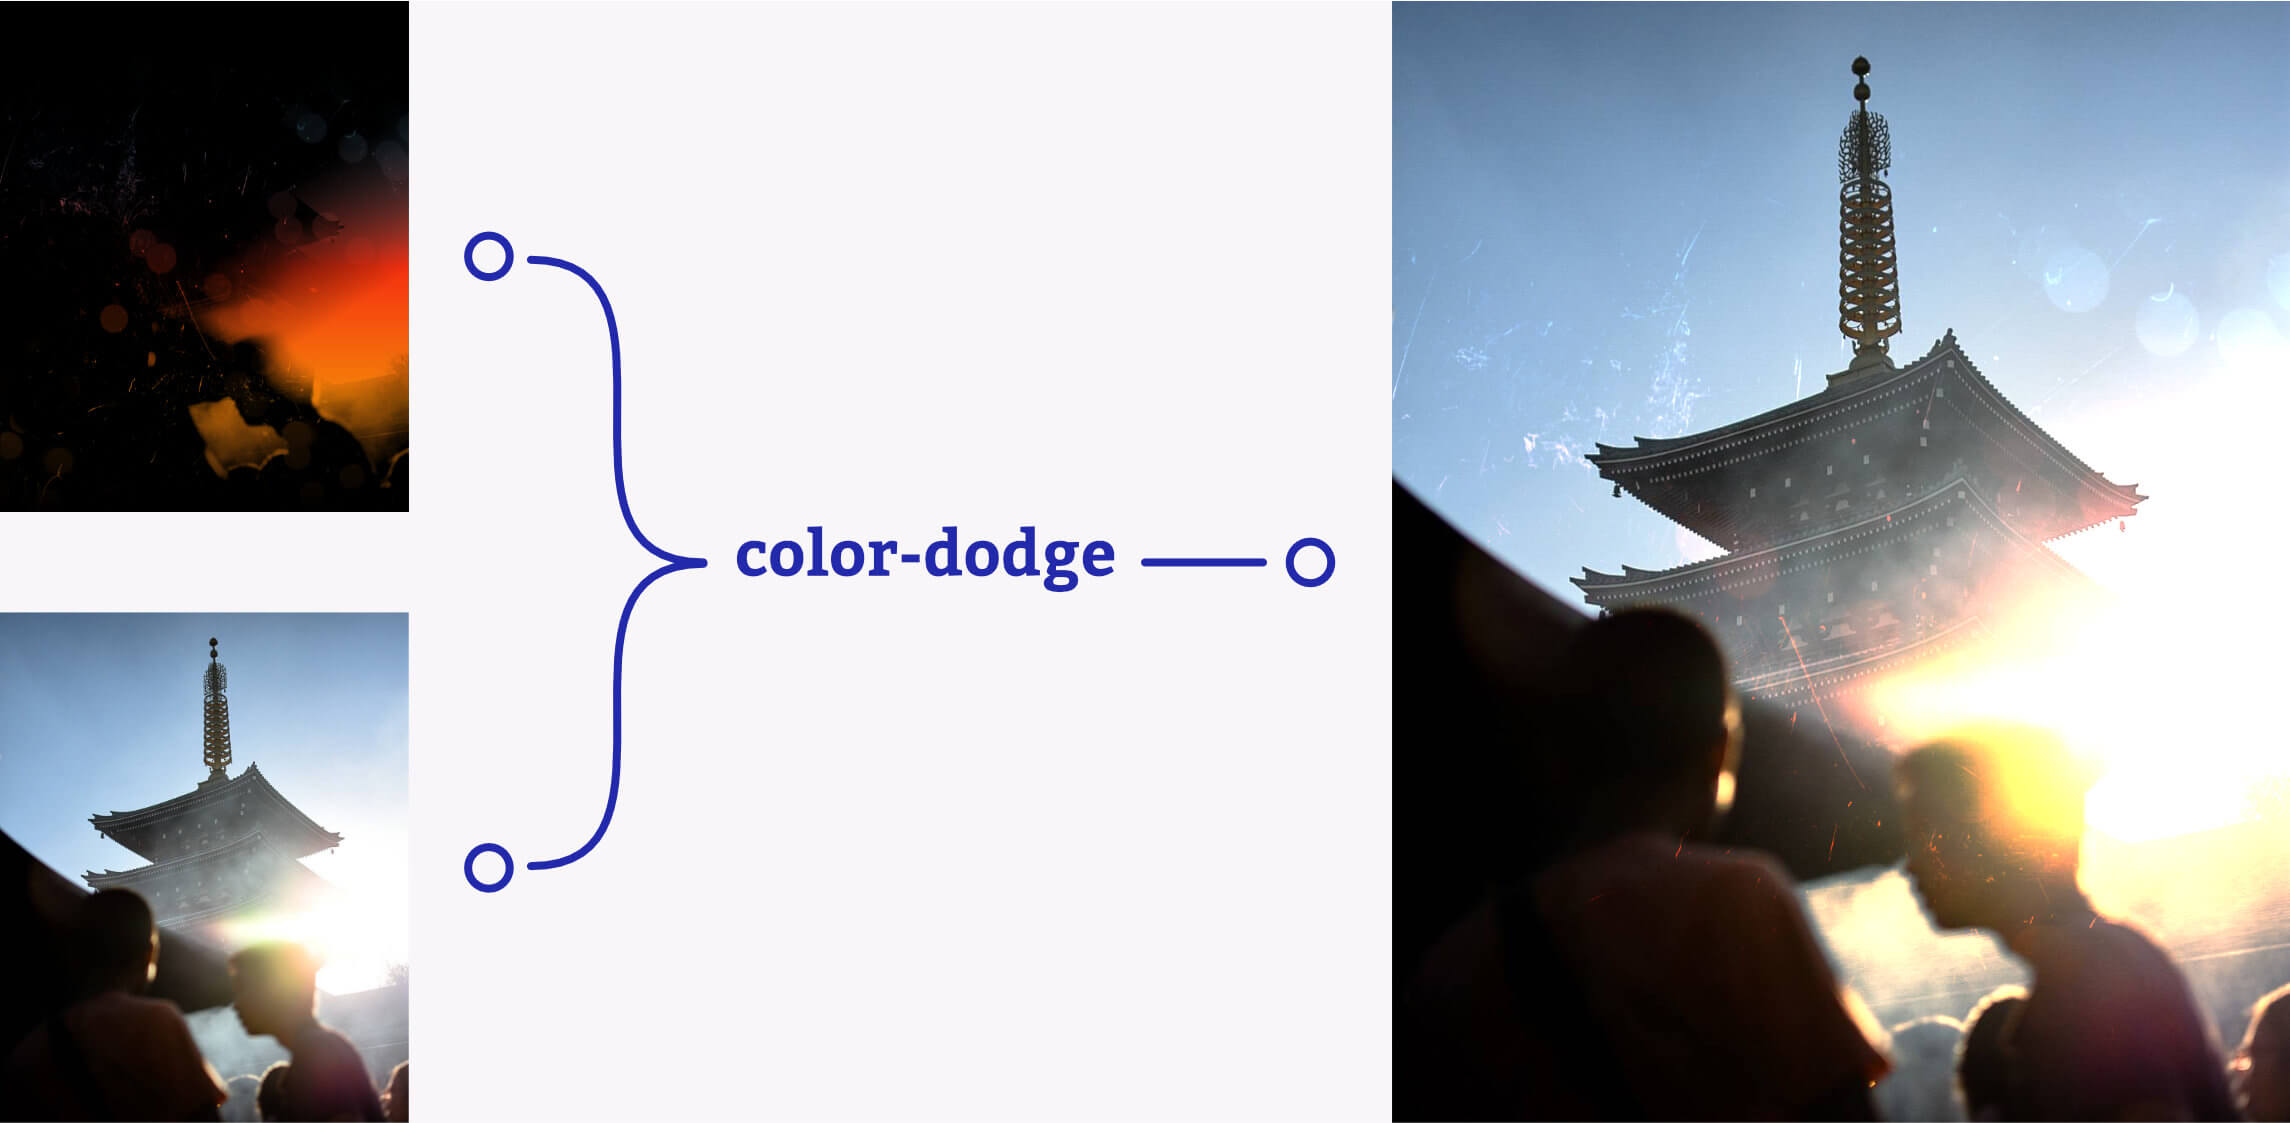 Две картинки объединяются в режиме color-dodge, образуя эффект вспышки